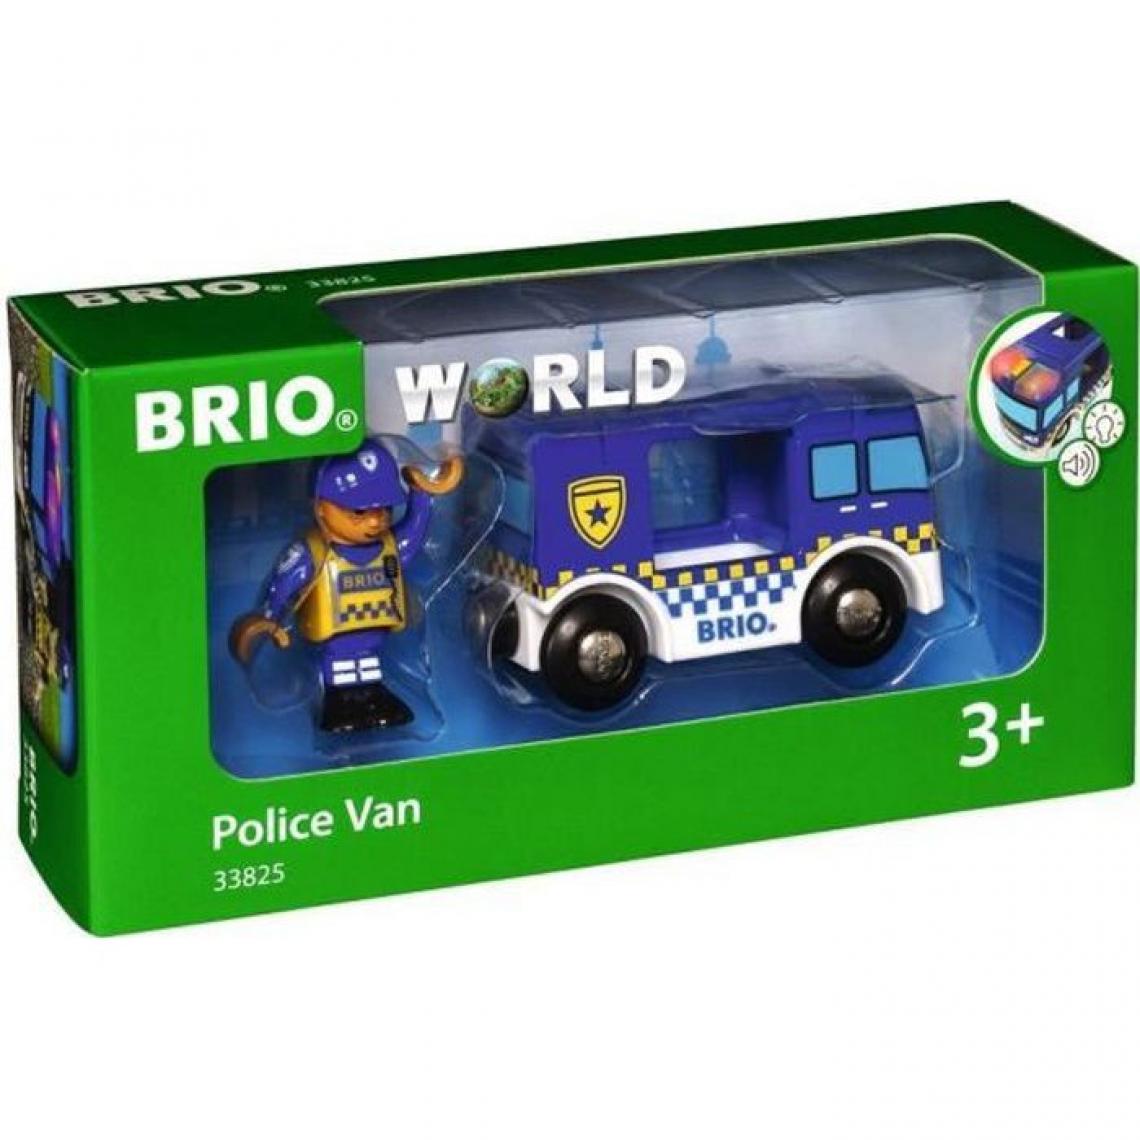 BRIO - Brio World Camion de Police Son et Lumiere - Accessoire son & lumiere Circuit de train en bois - Ravensburger - Des 3 ans - 3382 - Hélicoptères RC